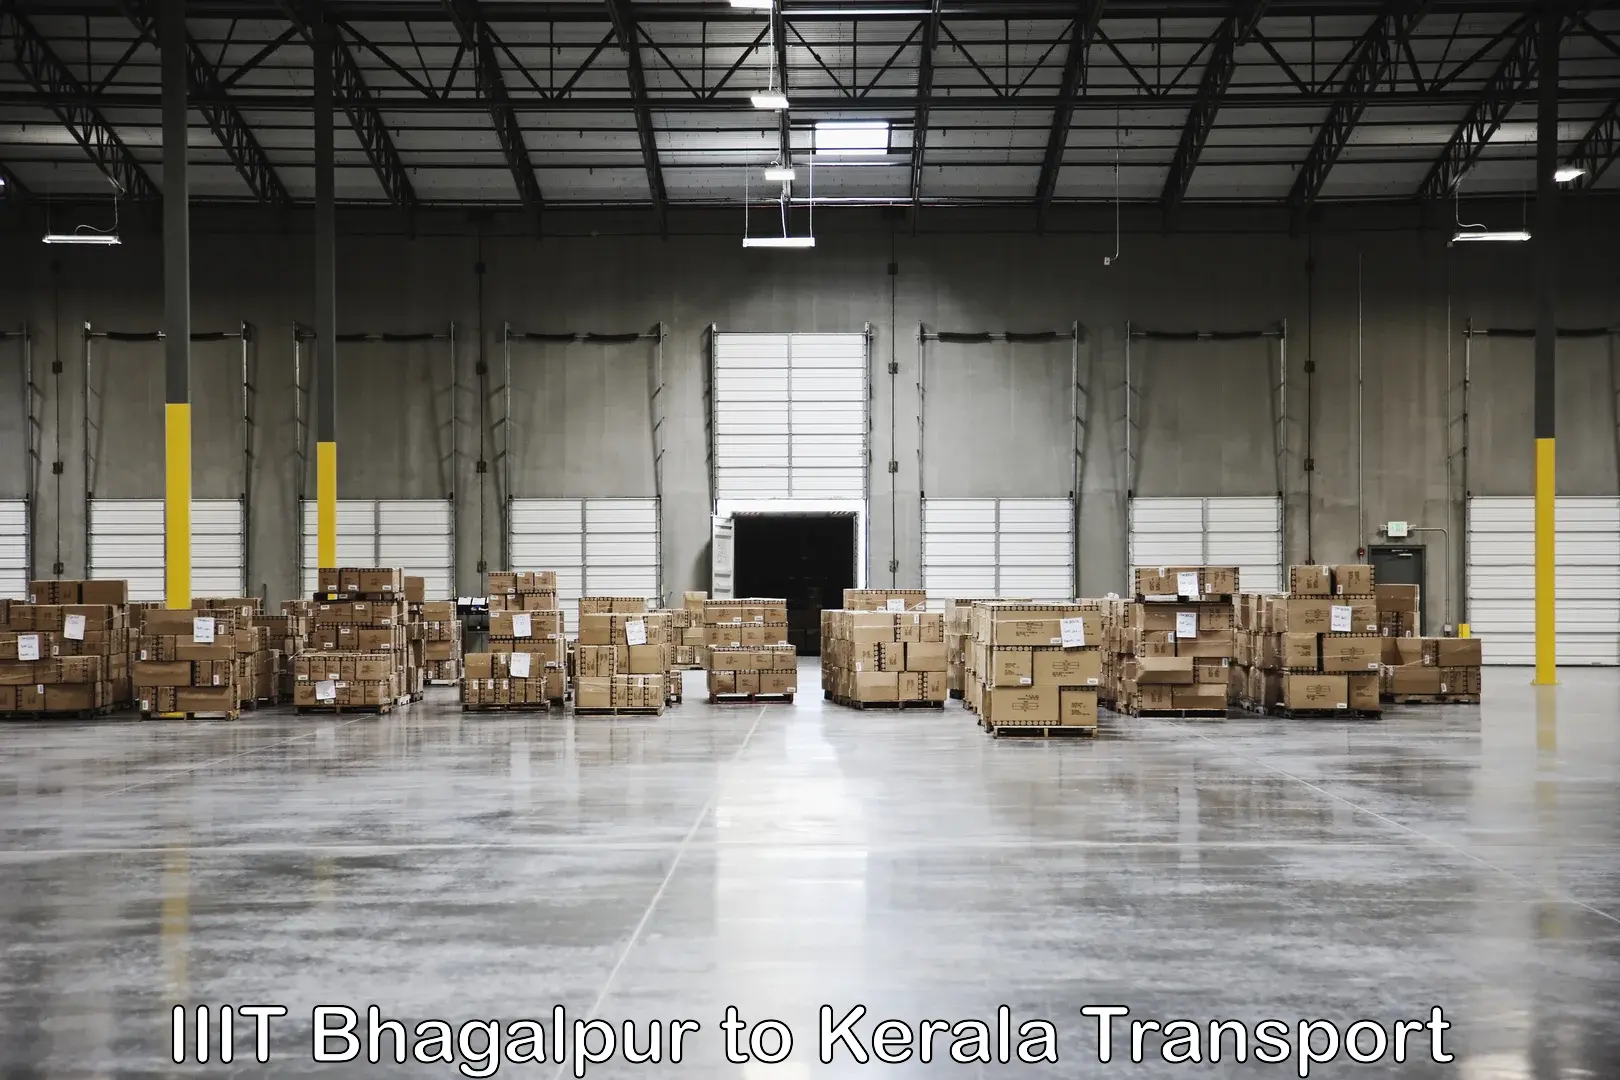 Road transport online services IIIT Bhagalpur to Karunagappally